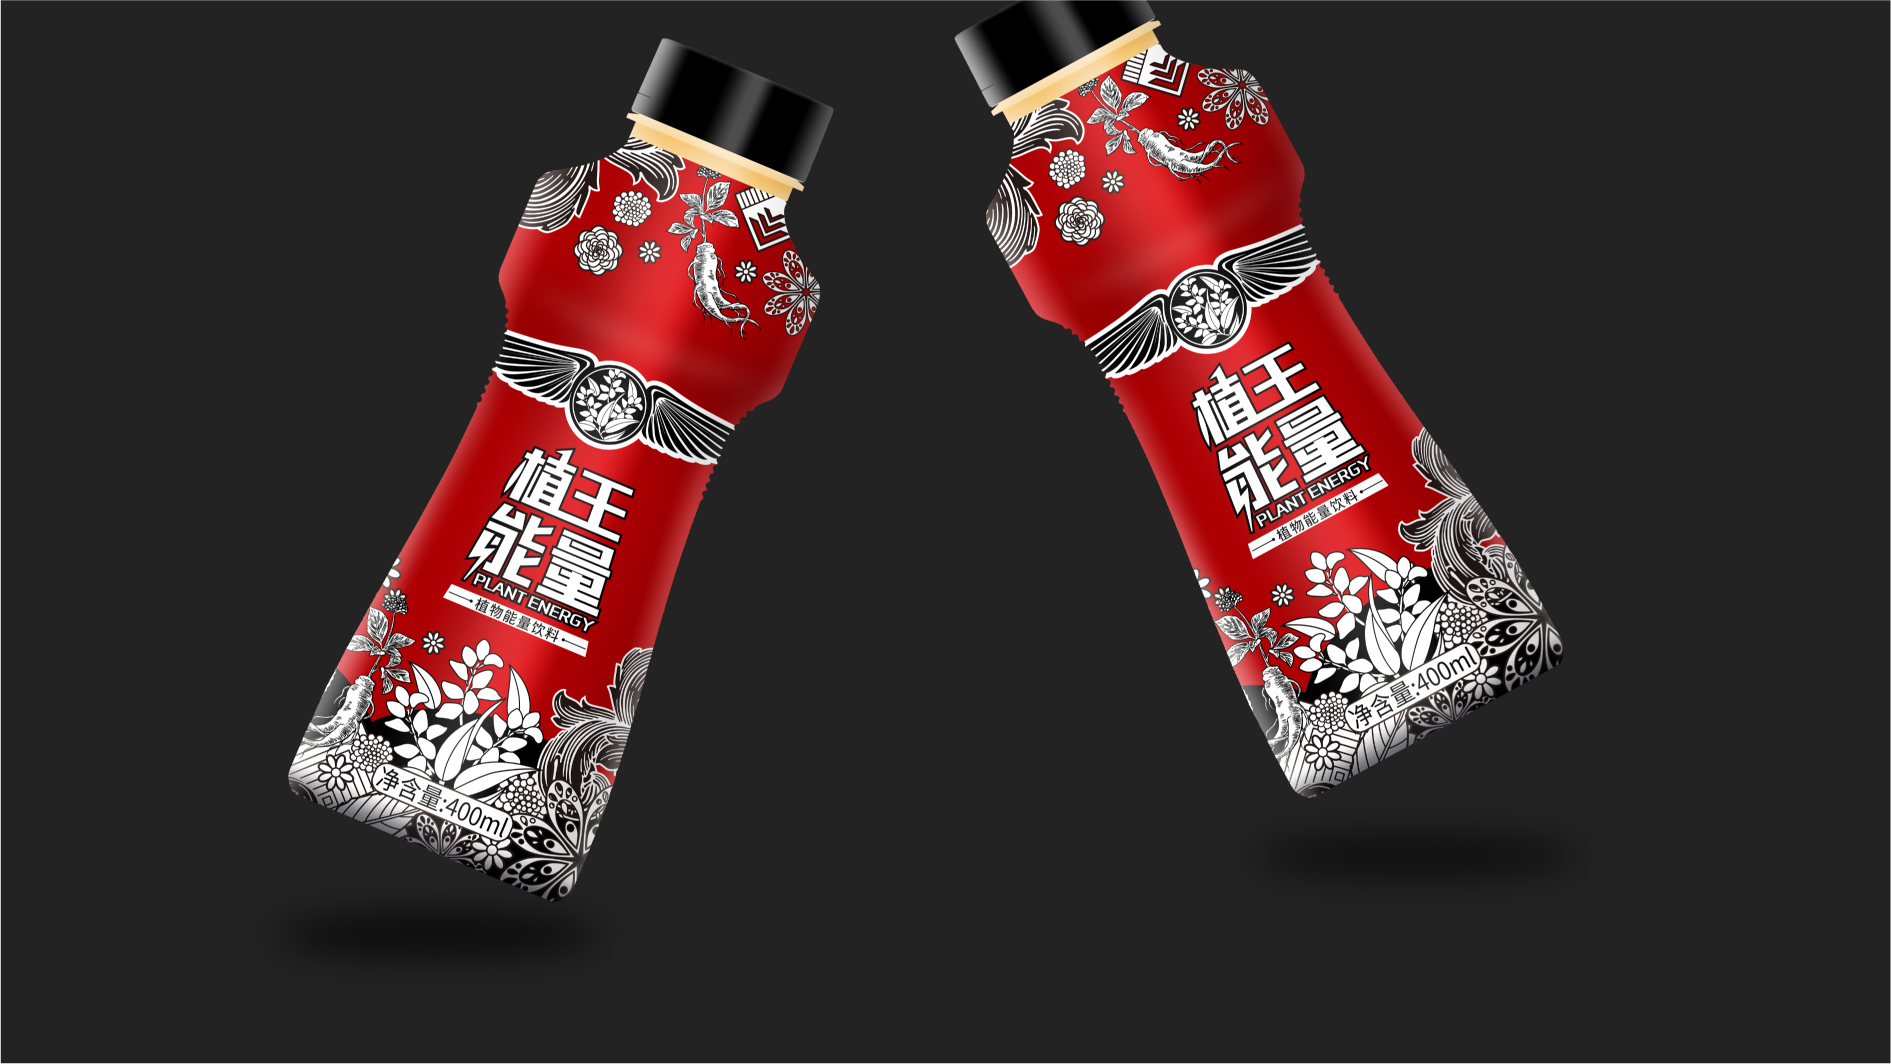 植王能量饮品品牌包装设计